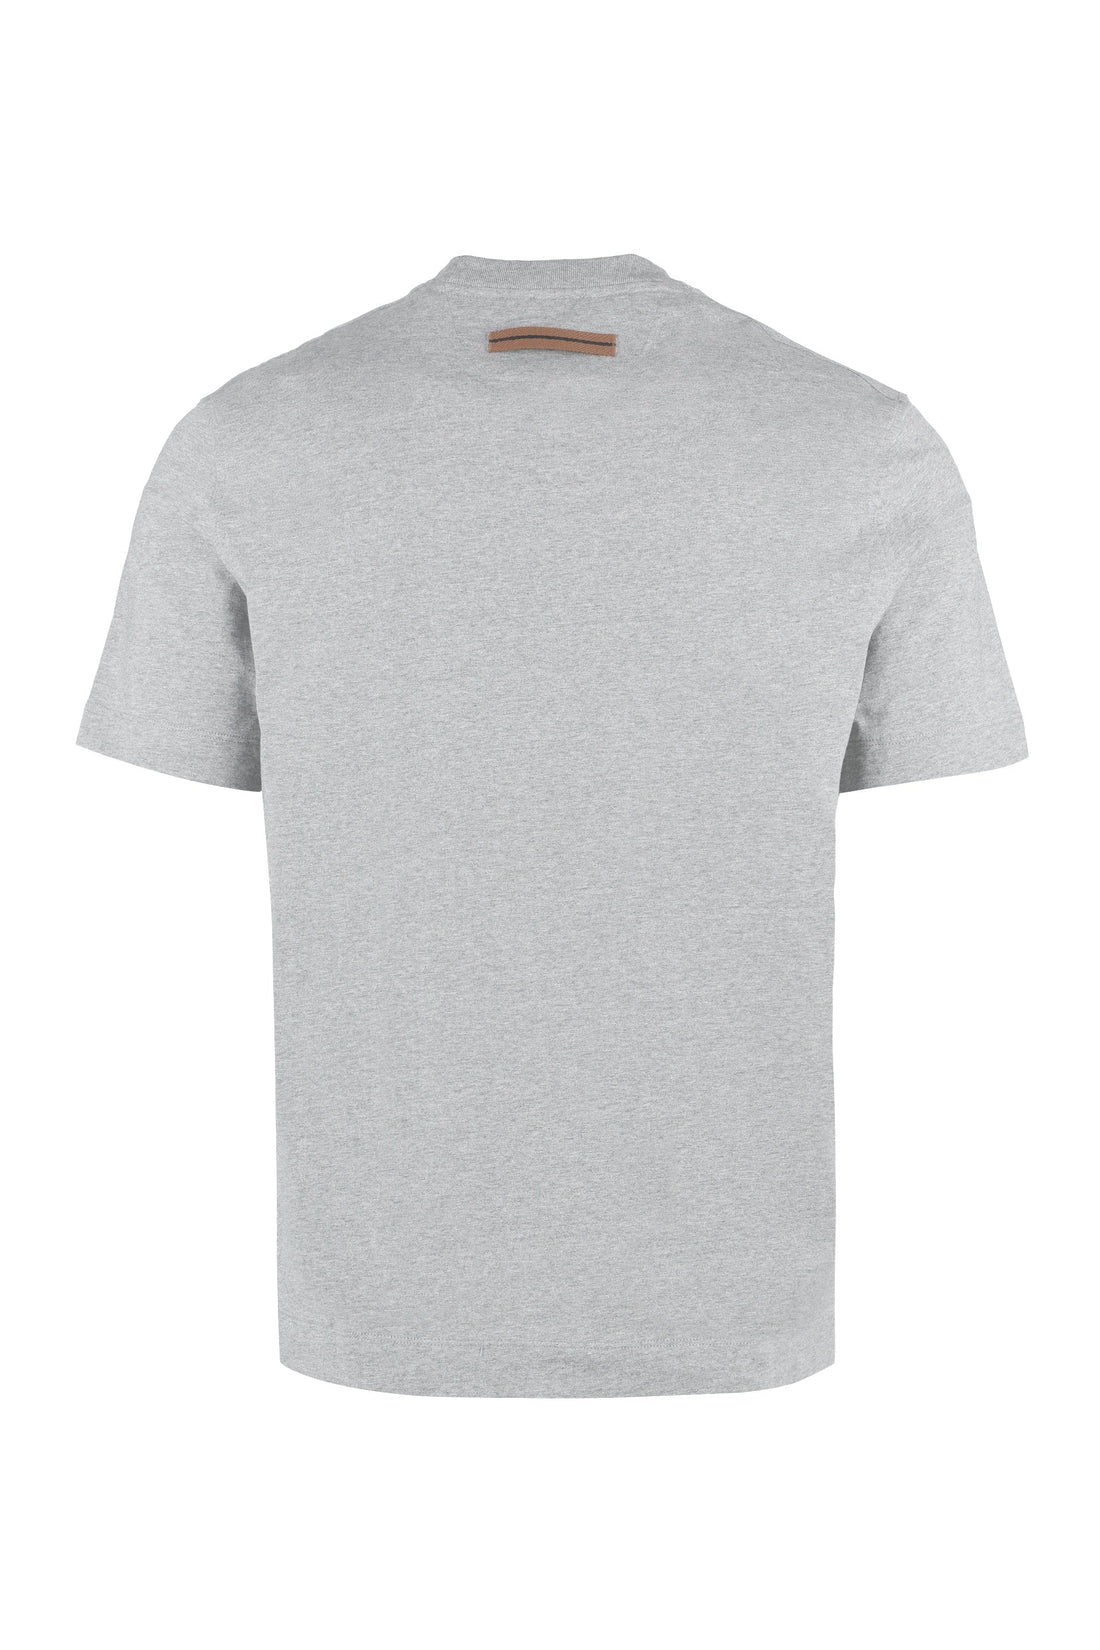 Zegna-OUTLET-SALE-Cotton crew-neck T-shirt-ARCHIVIST